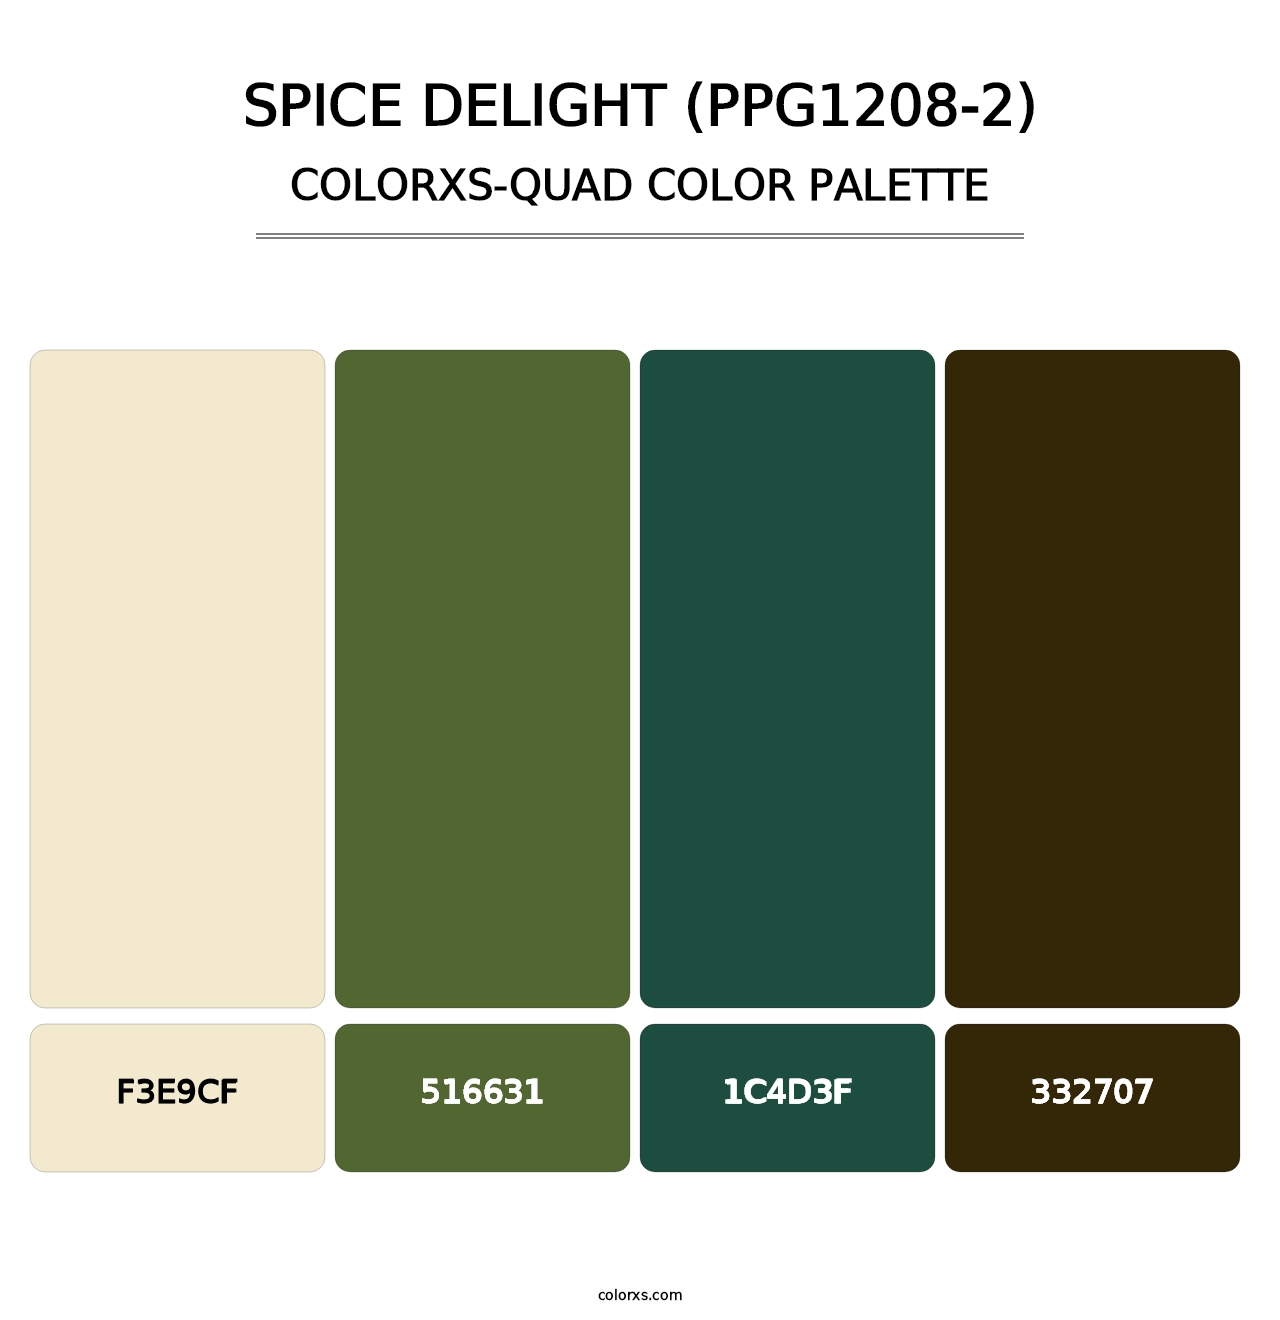 Spice Delight (PPG1208-2) - Colorxs Quad Palette